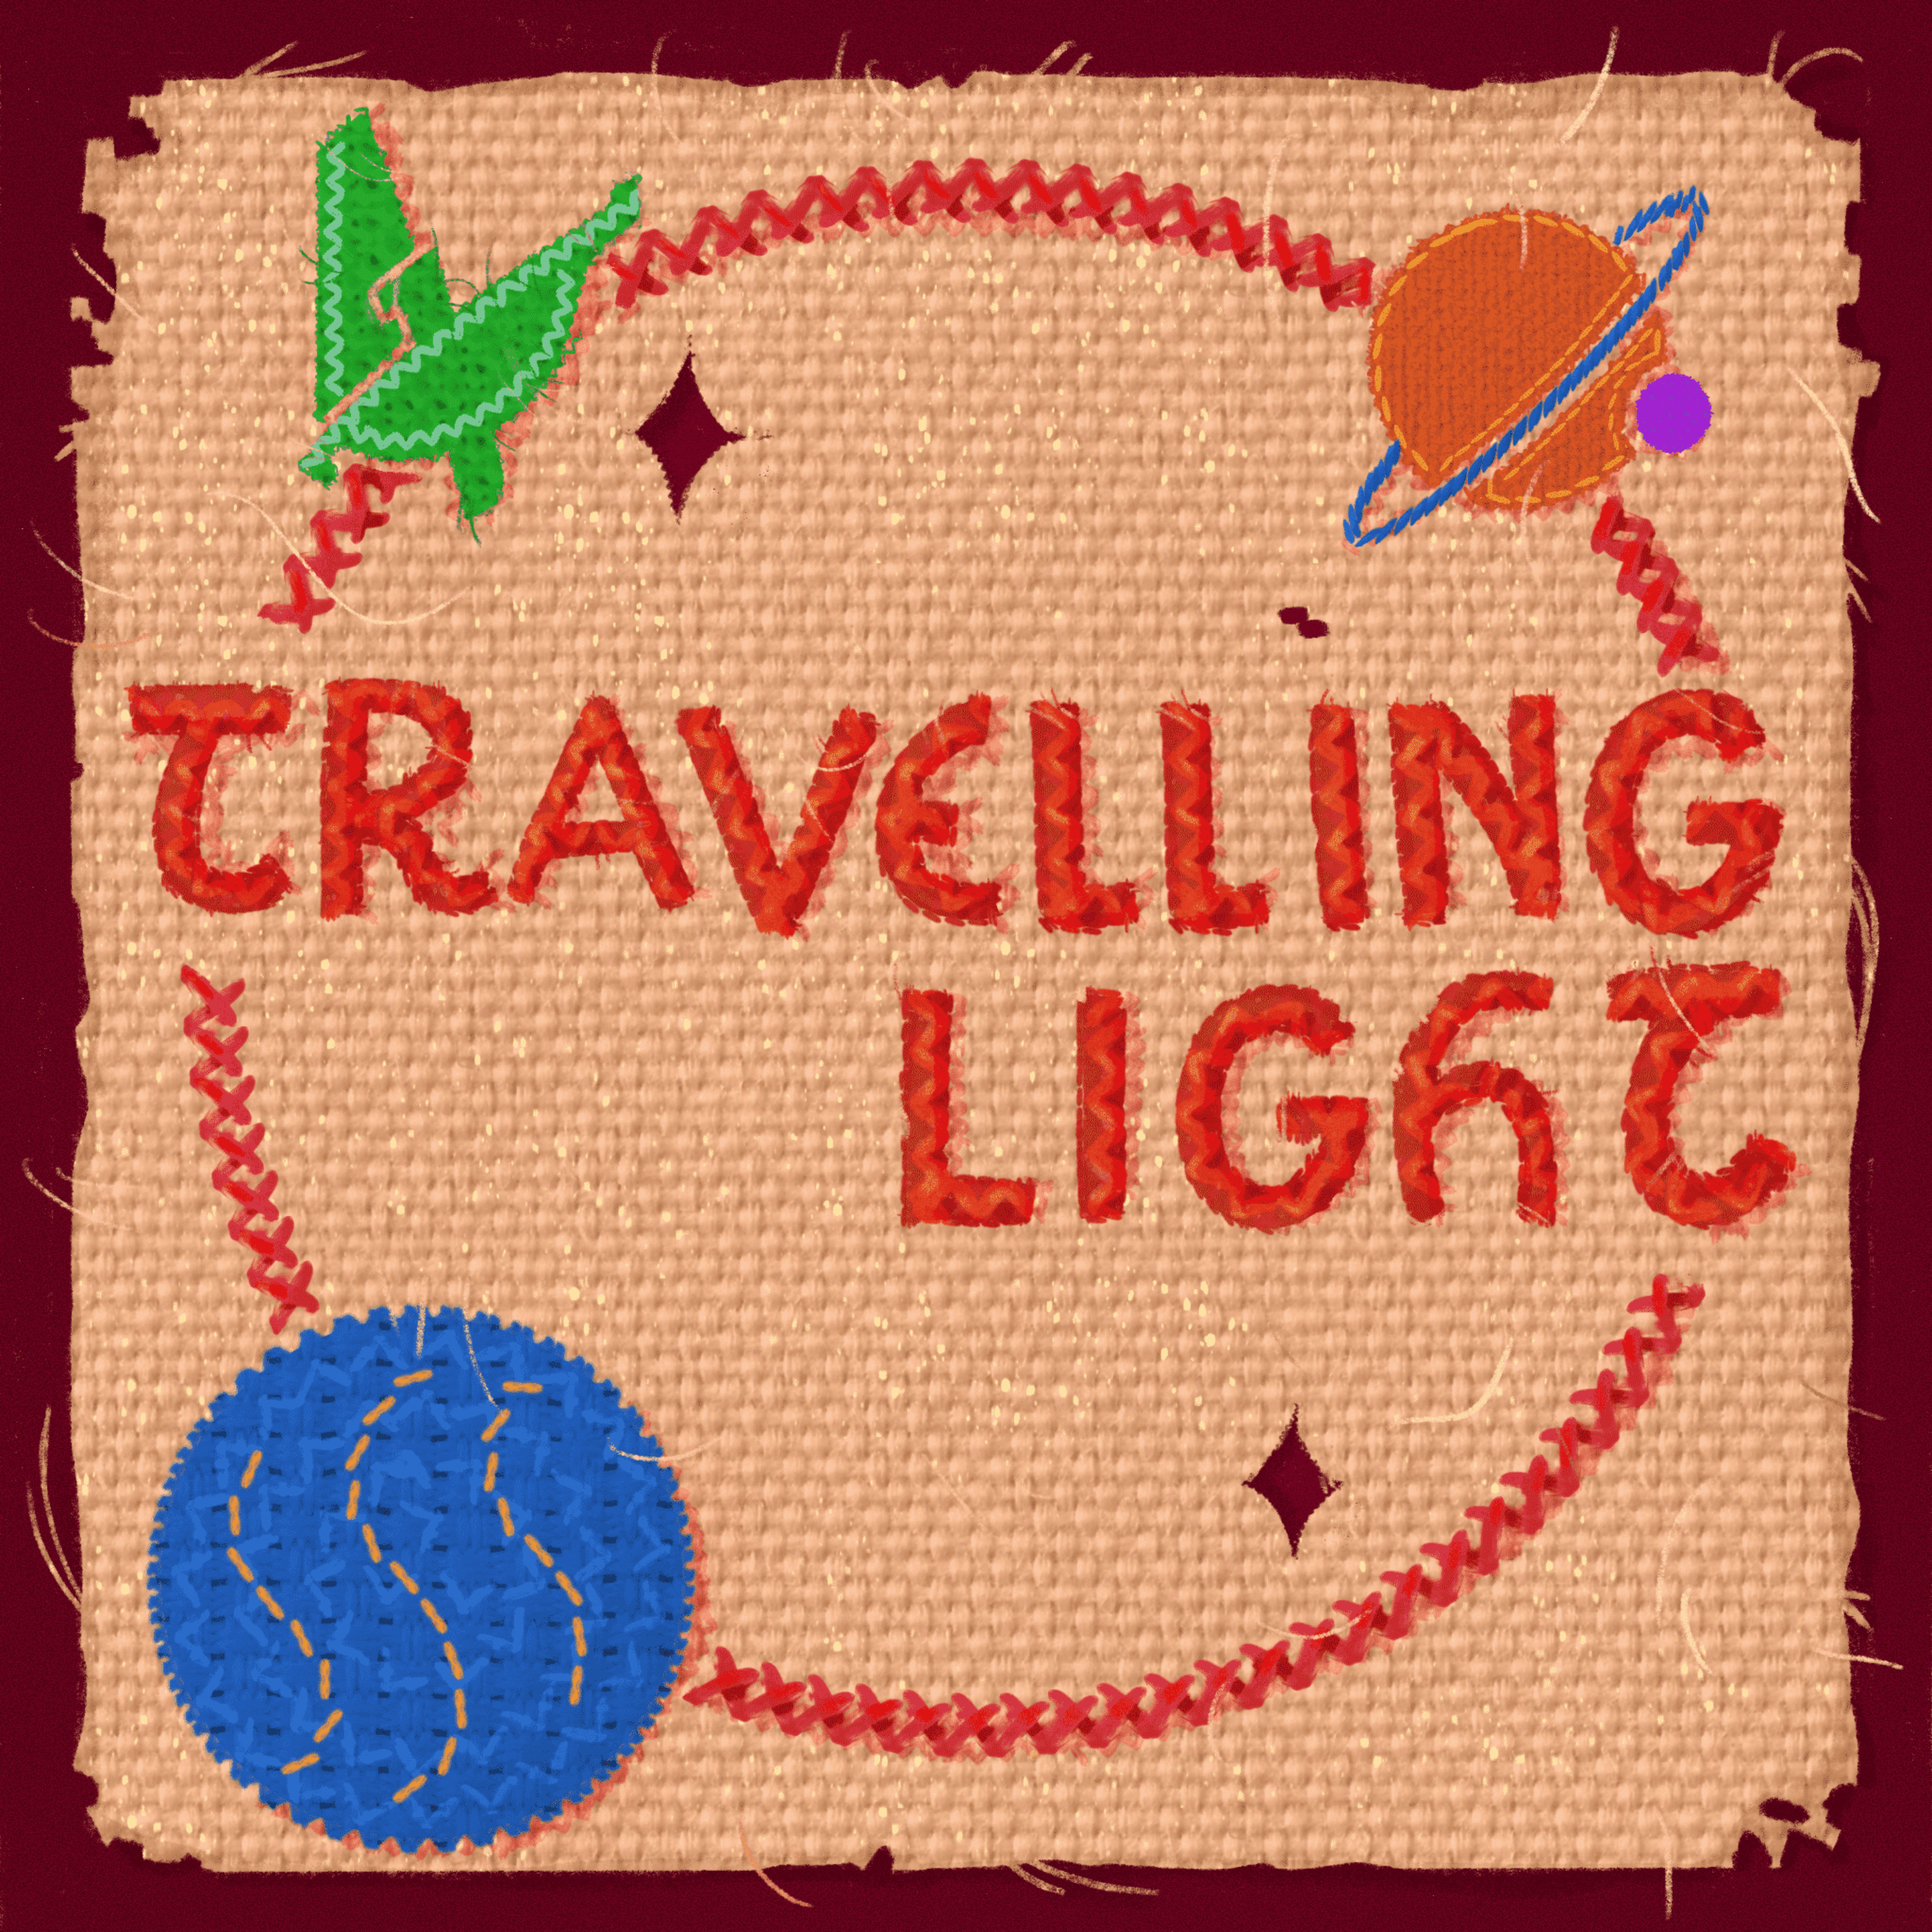 Travelling Light Trailer